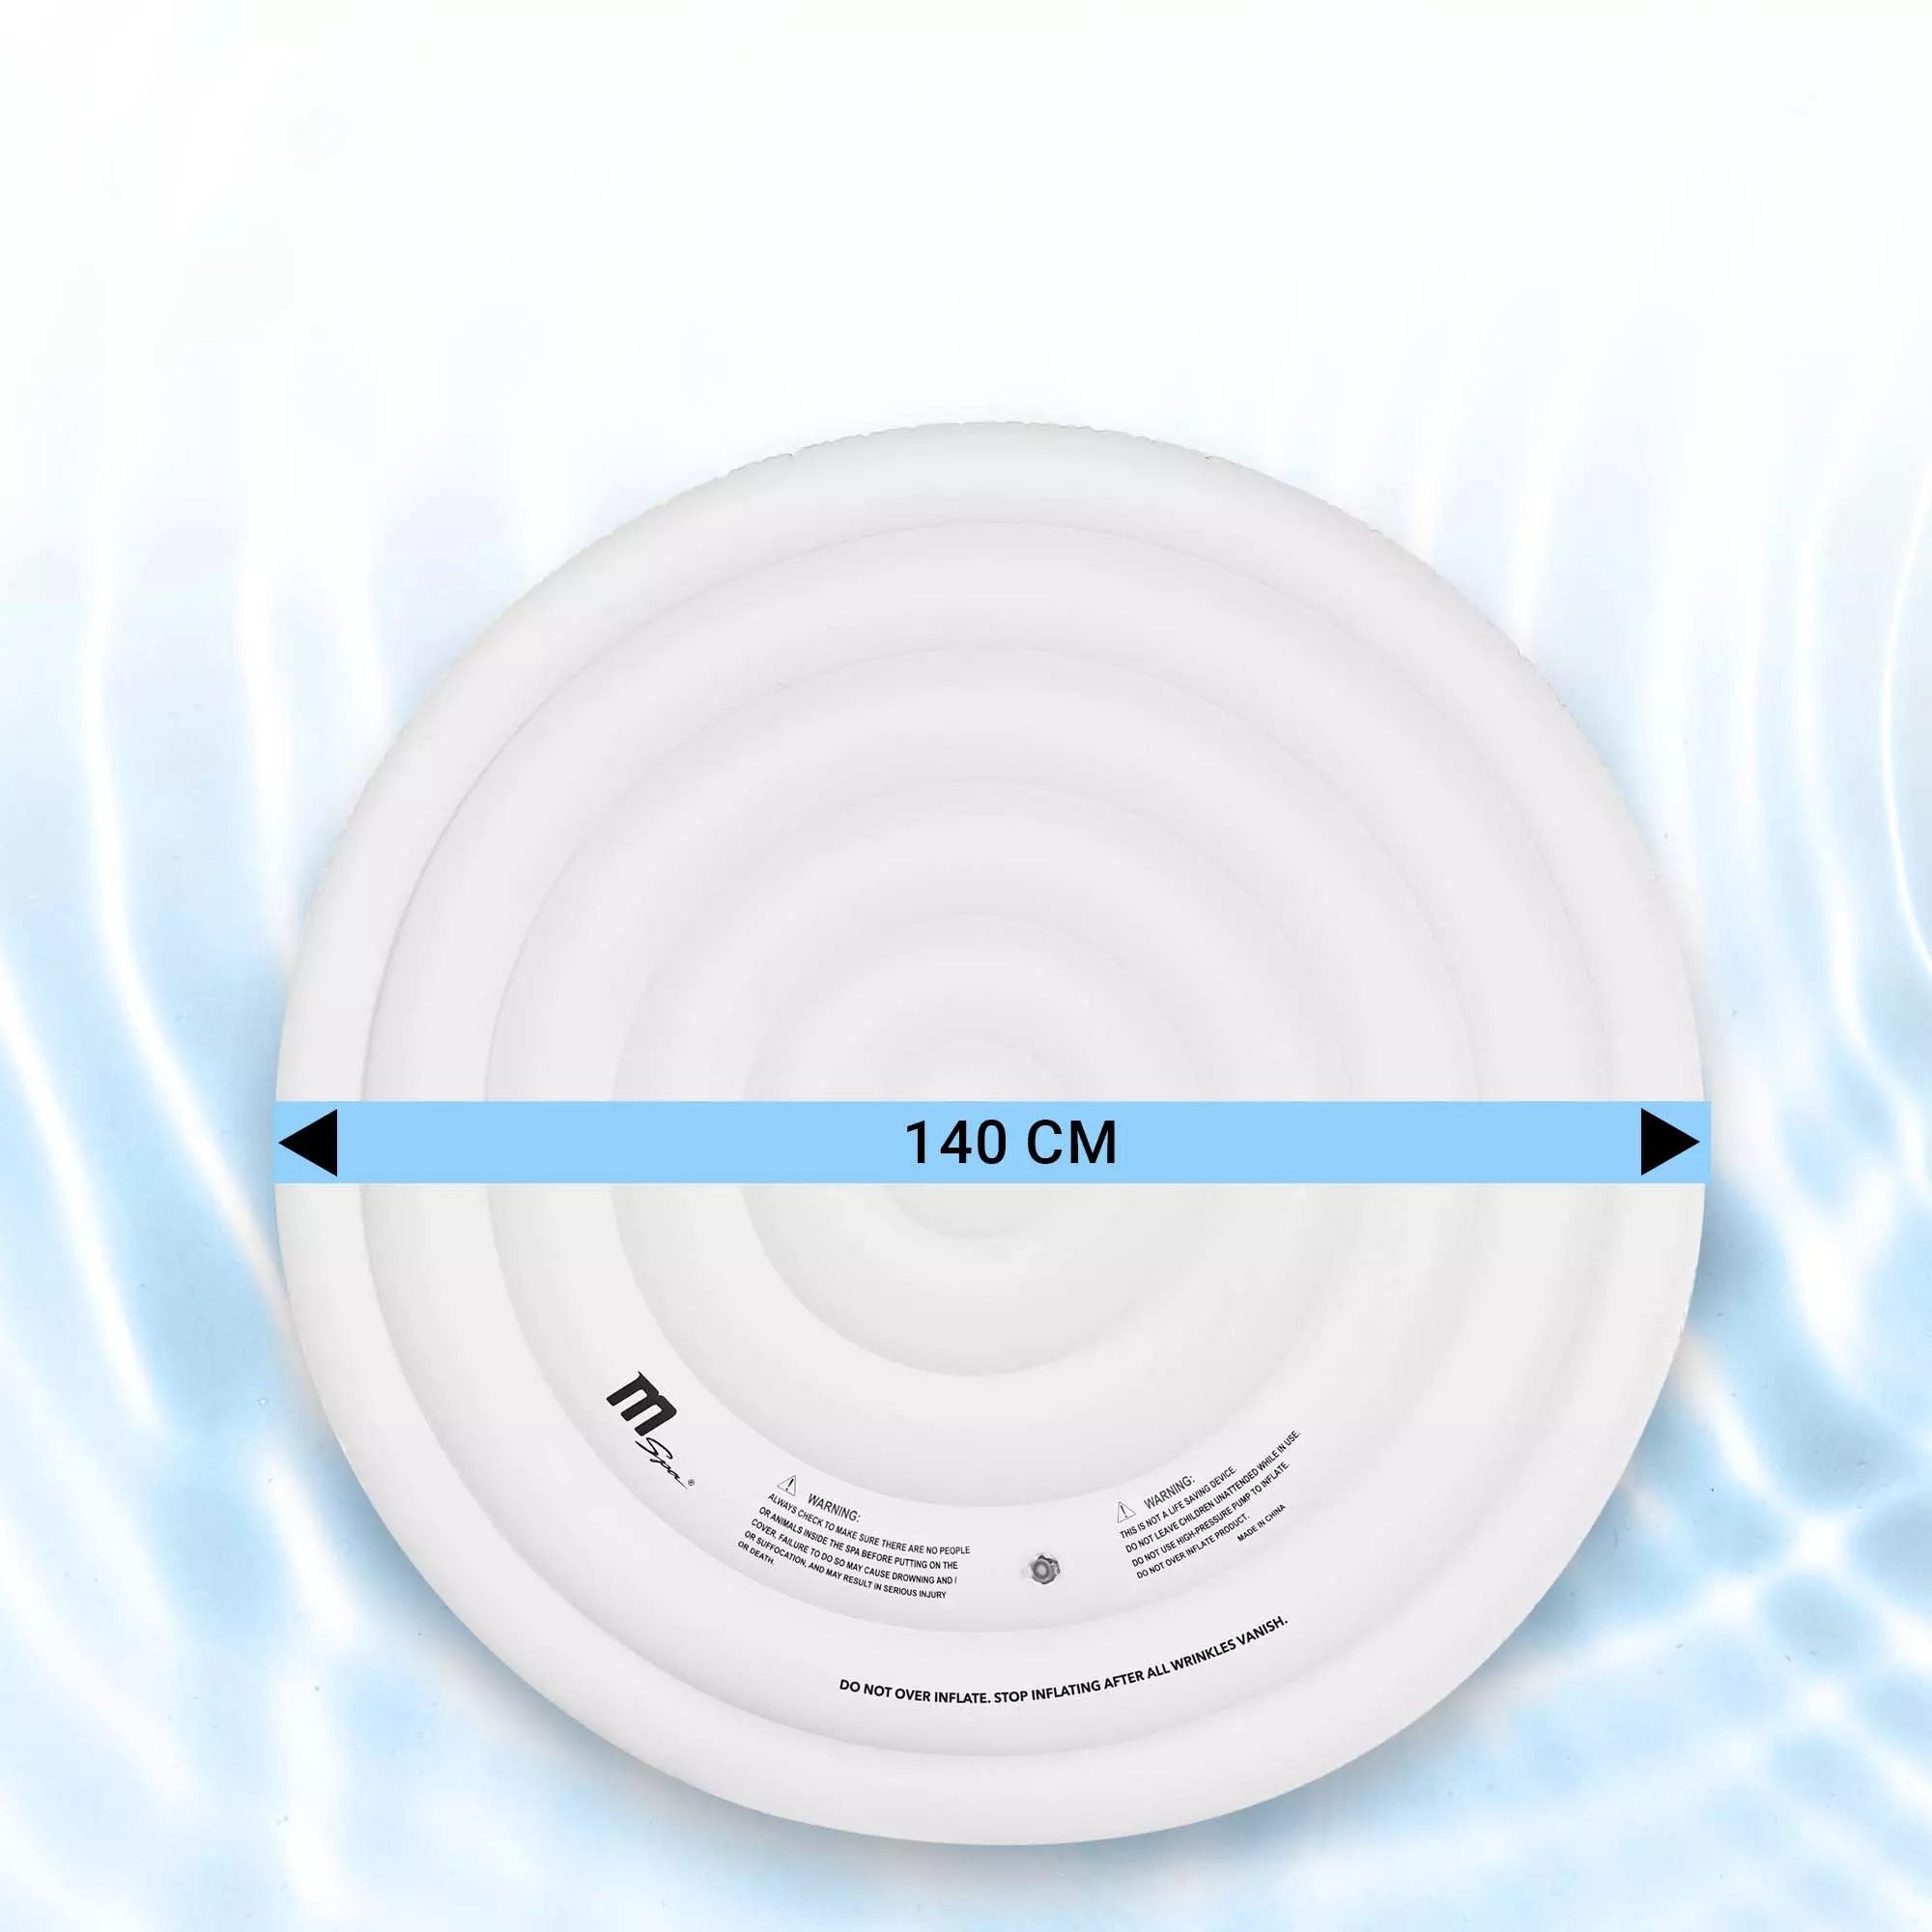 Aufblasbare Whirlpool-Abdeckung mit einem Durchmesser von 140 cm im Wasser